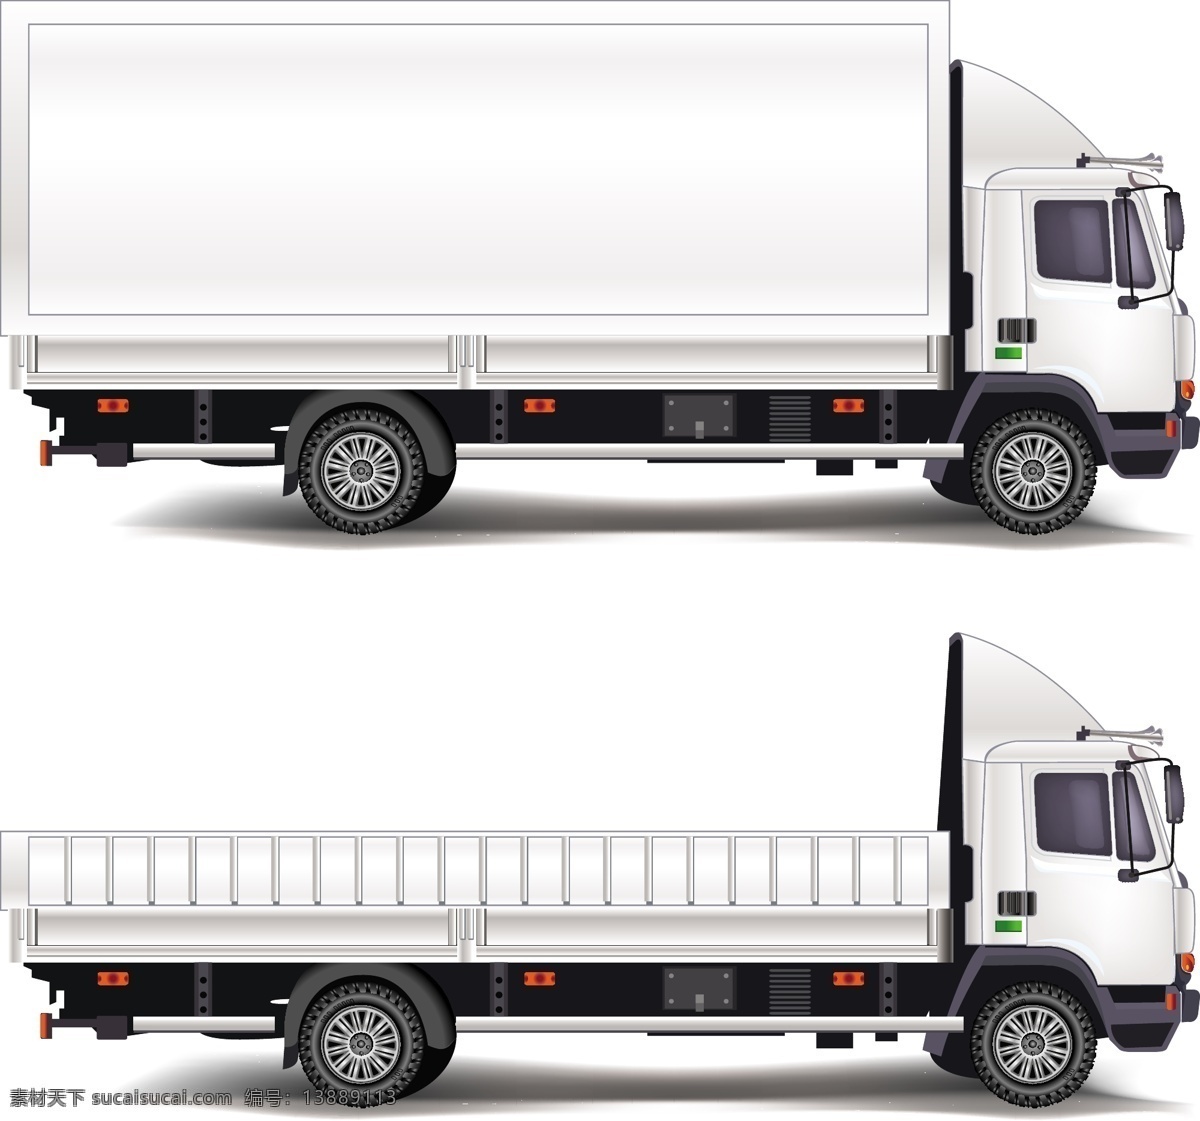 货运 卡车 矢量 货运卡车矢量 货运卡车素材 货运卡车 卡车矢量素材 卡车矢量 卡车素材 包厢卡车 运输卡车 共享设计矢量 现代科技 交通工具